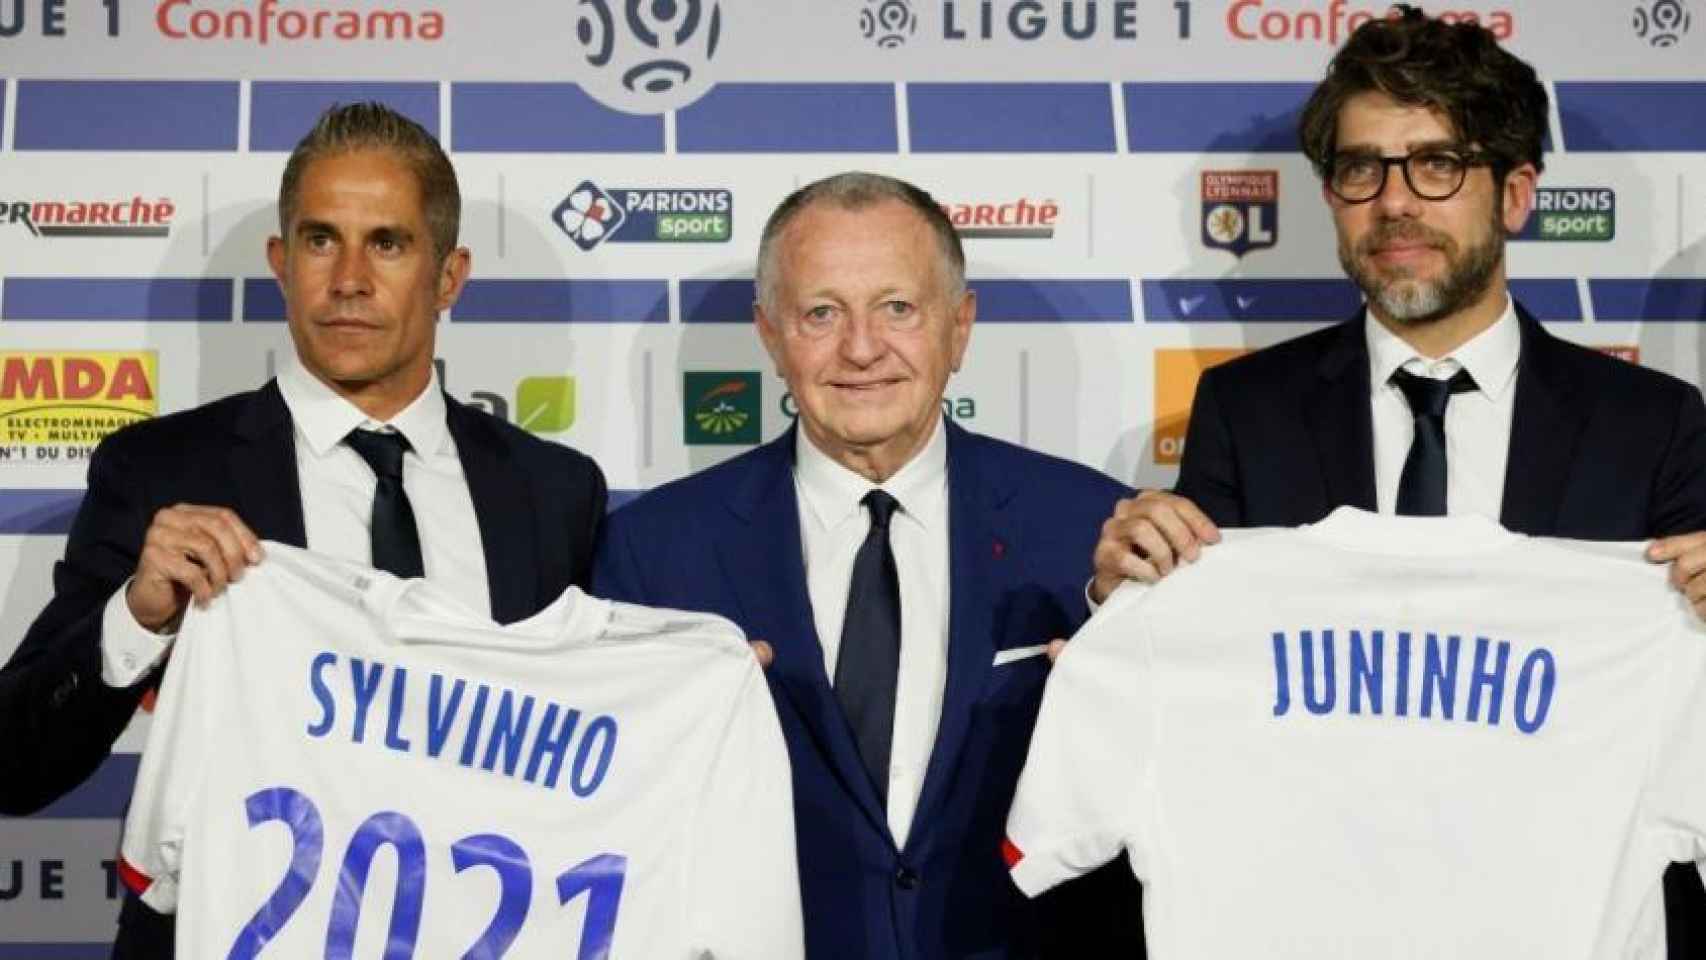 Sylvinho y Juninho en Lyon.